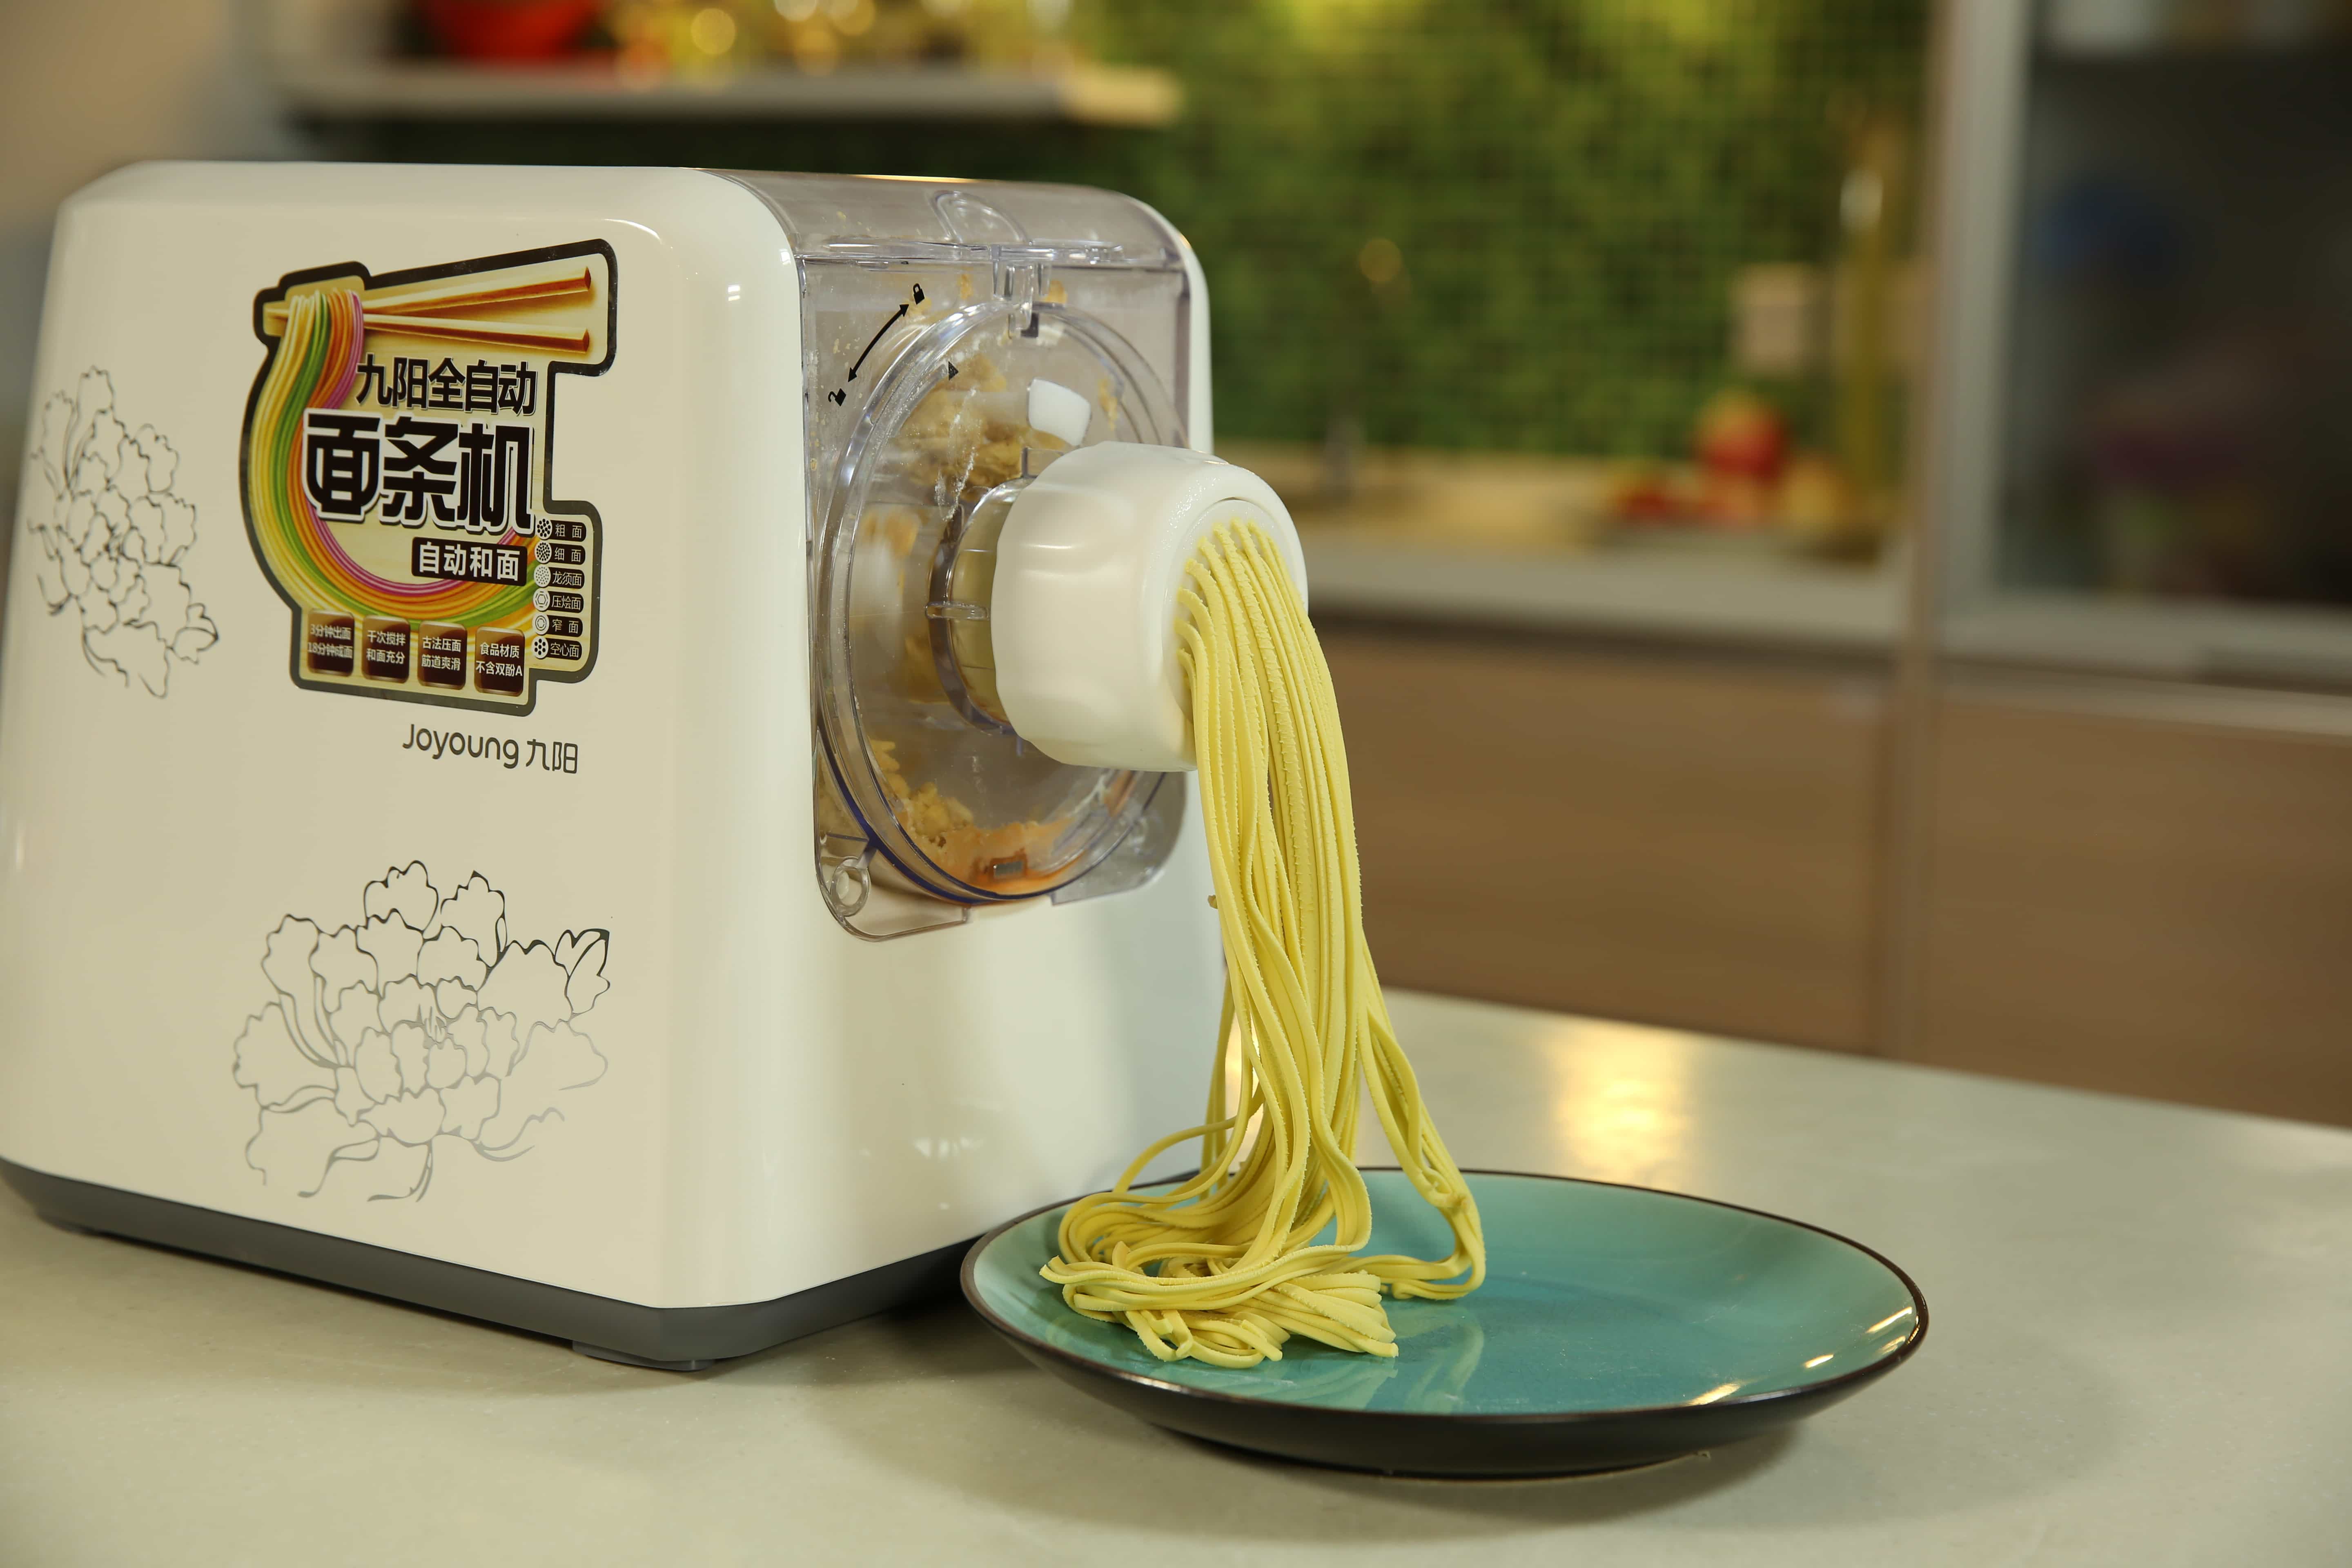 (JYS-N6CS) Joyoung Noodle maker with noodles image2